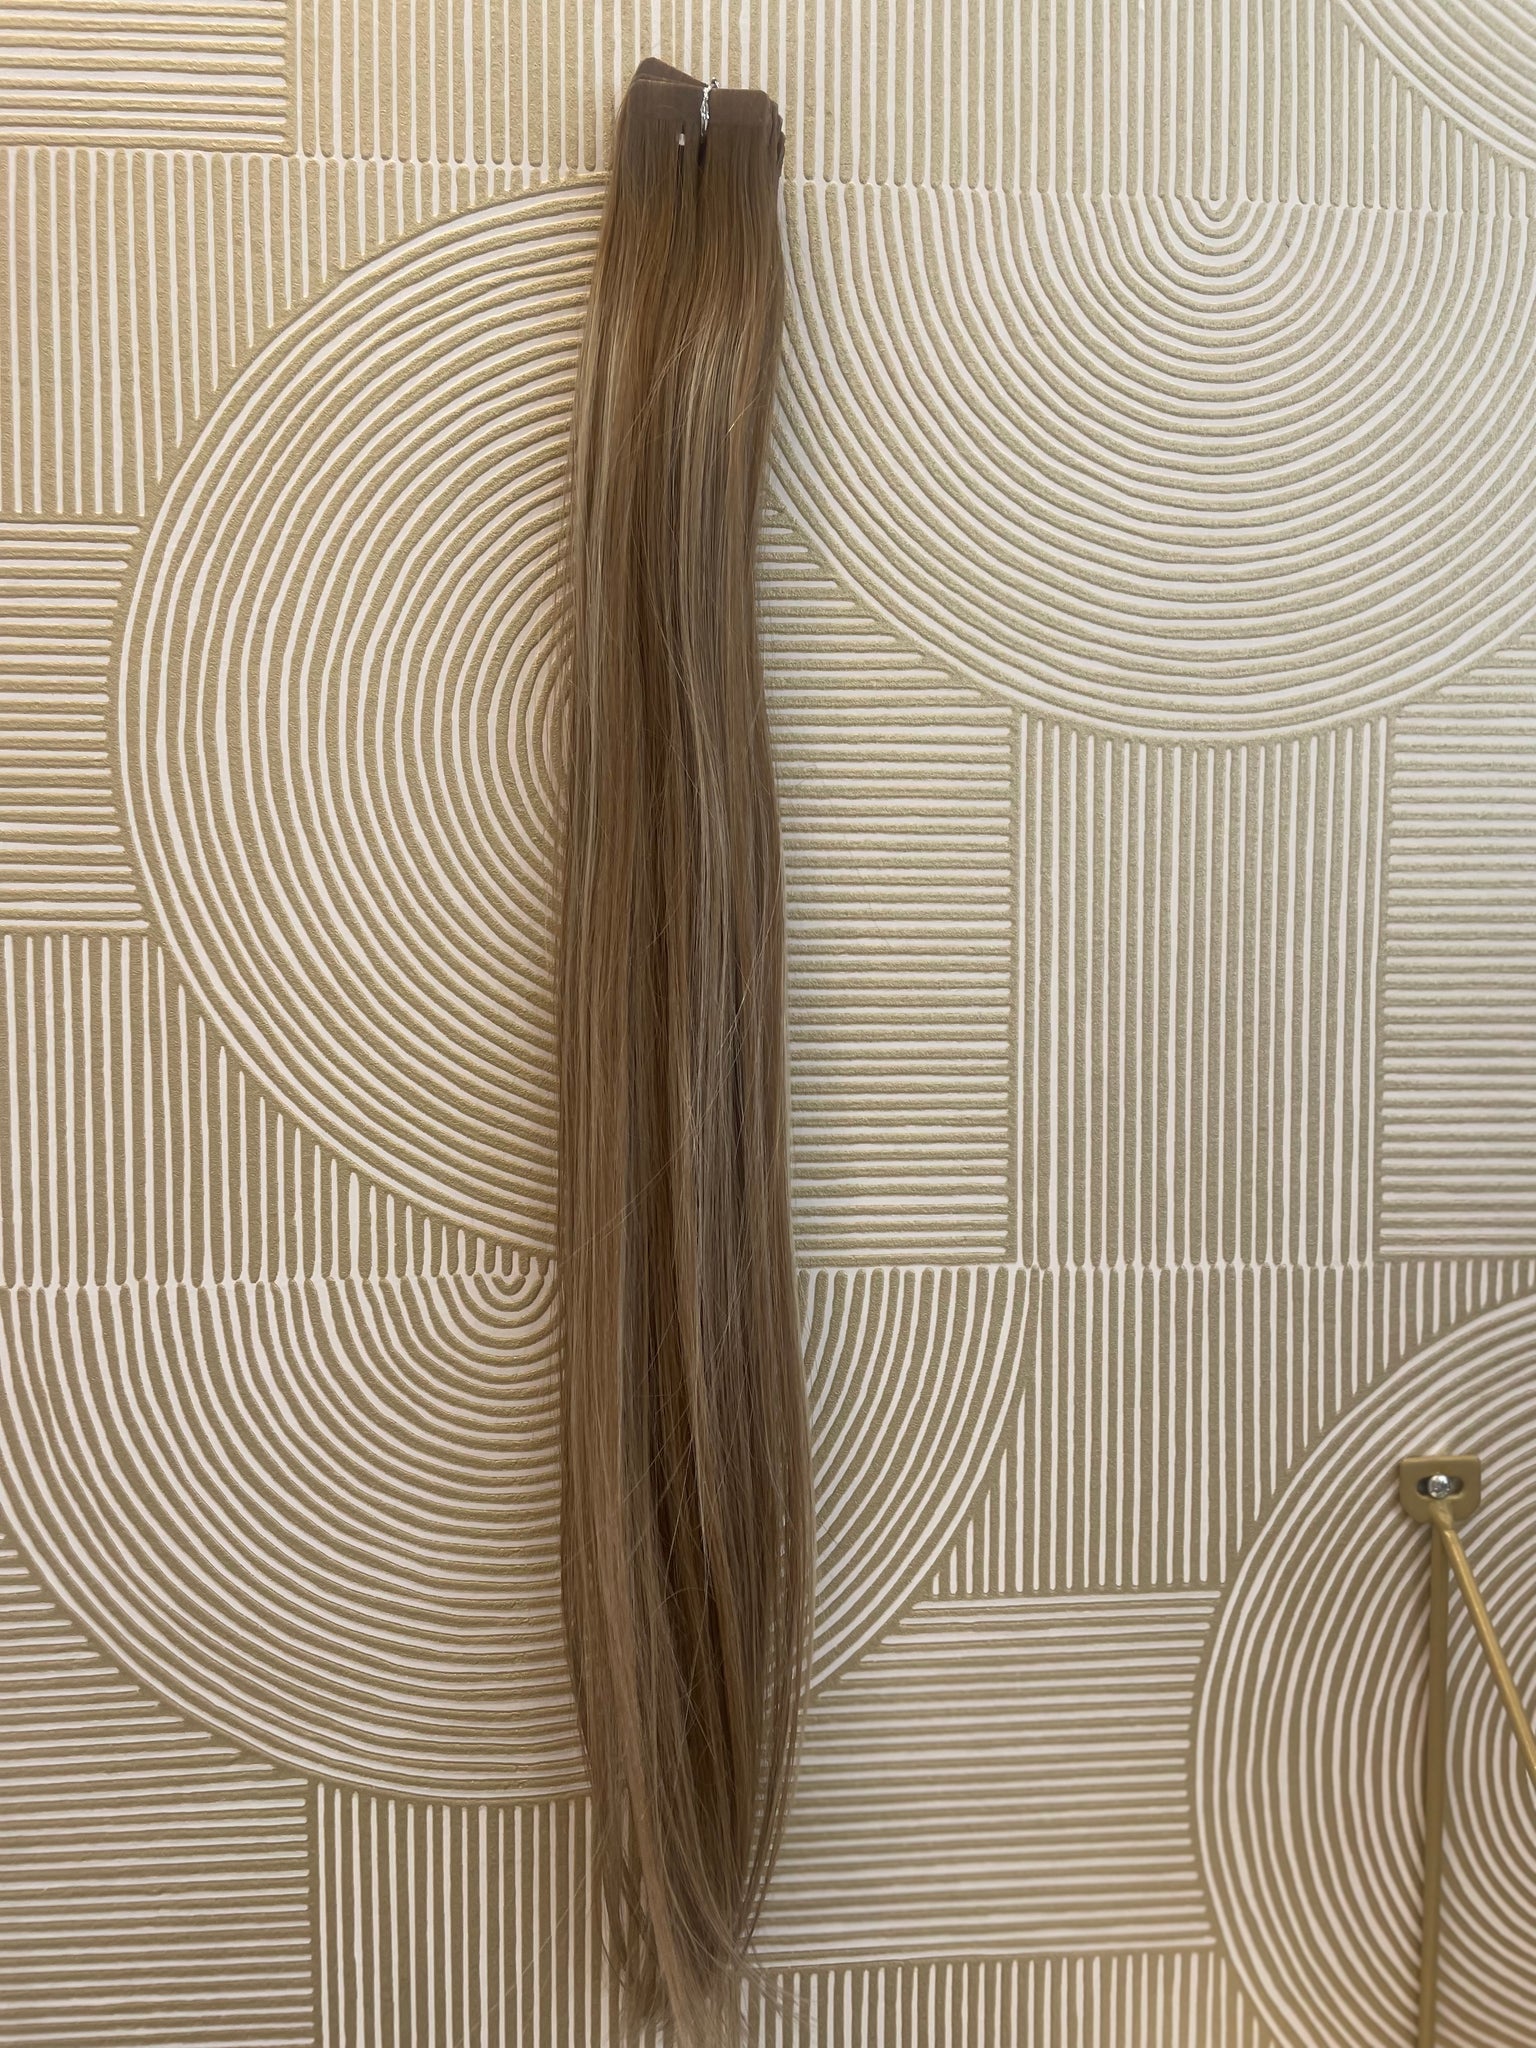 Extensions Tape 50 gram (6.260B) 55 cm European hair